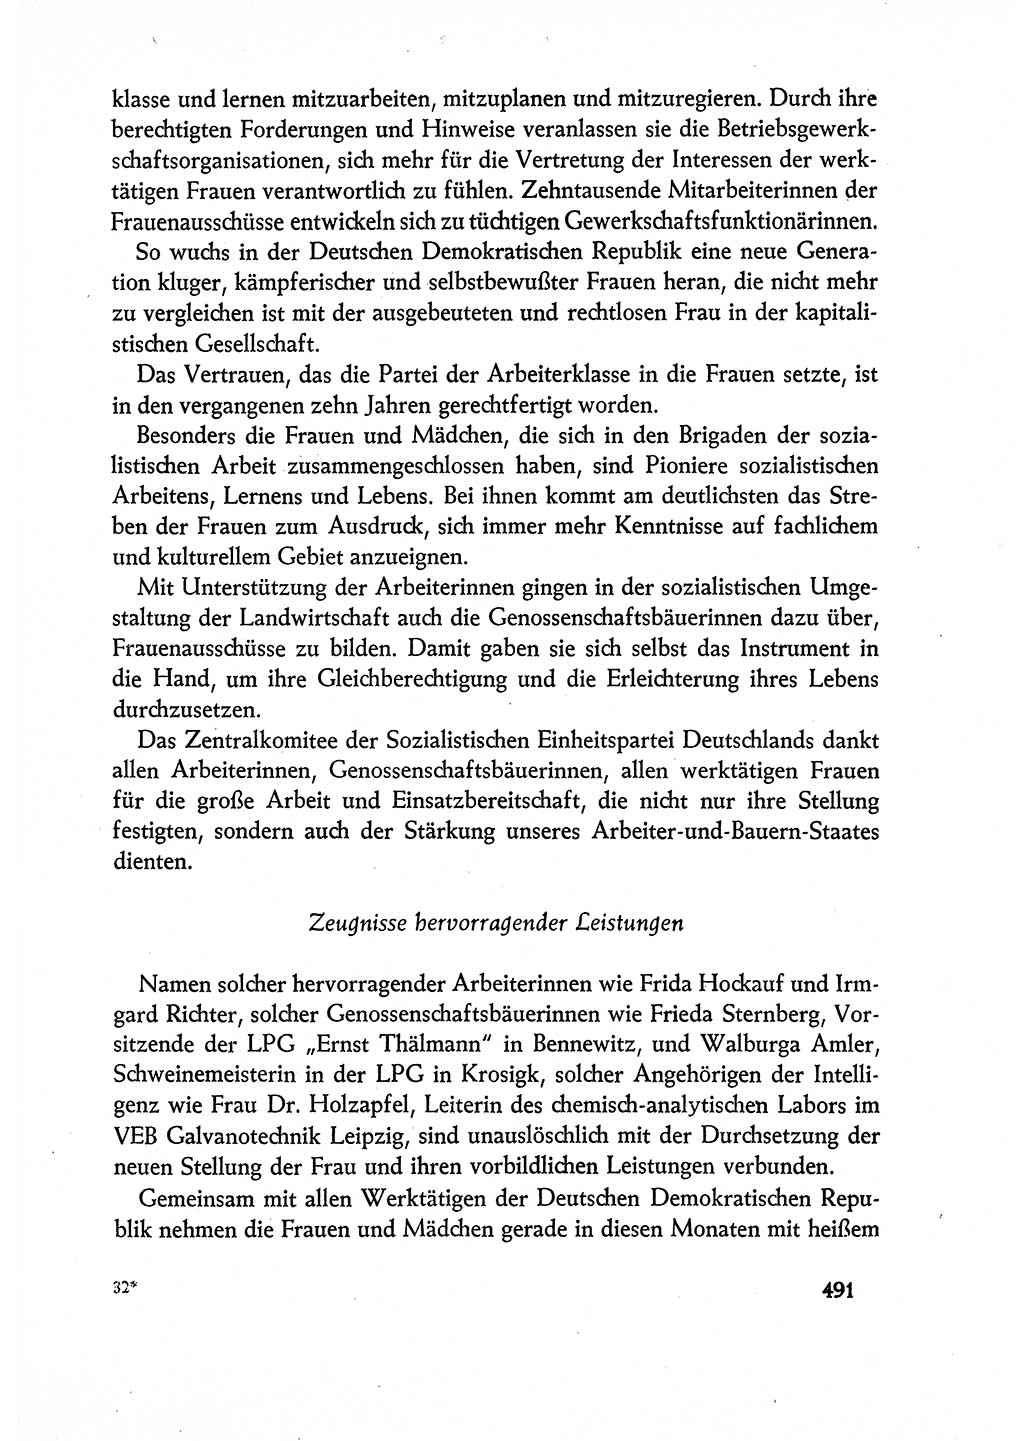 Dokumente der Sozialistischen Einheitspartei Deutschlands (SED) [Deutsche Demokratische Republik (DDR)] 1960-1961, Seite 491 (Dok. SED DDR 1960-1961, S. 491)